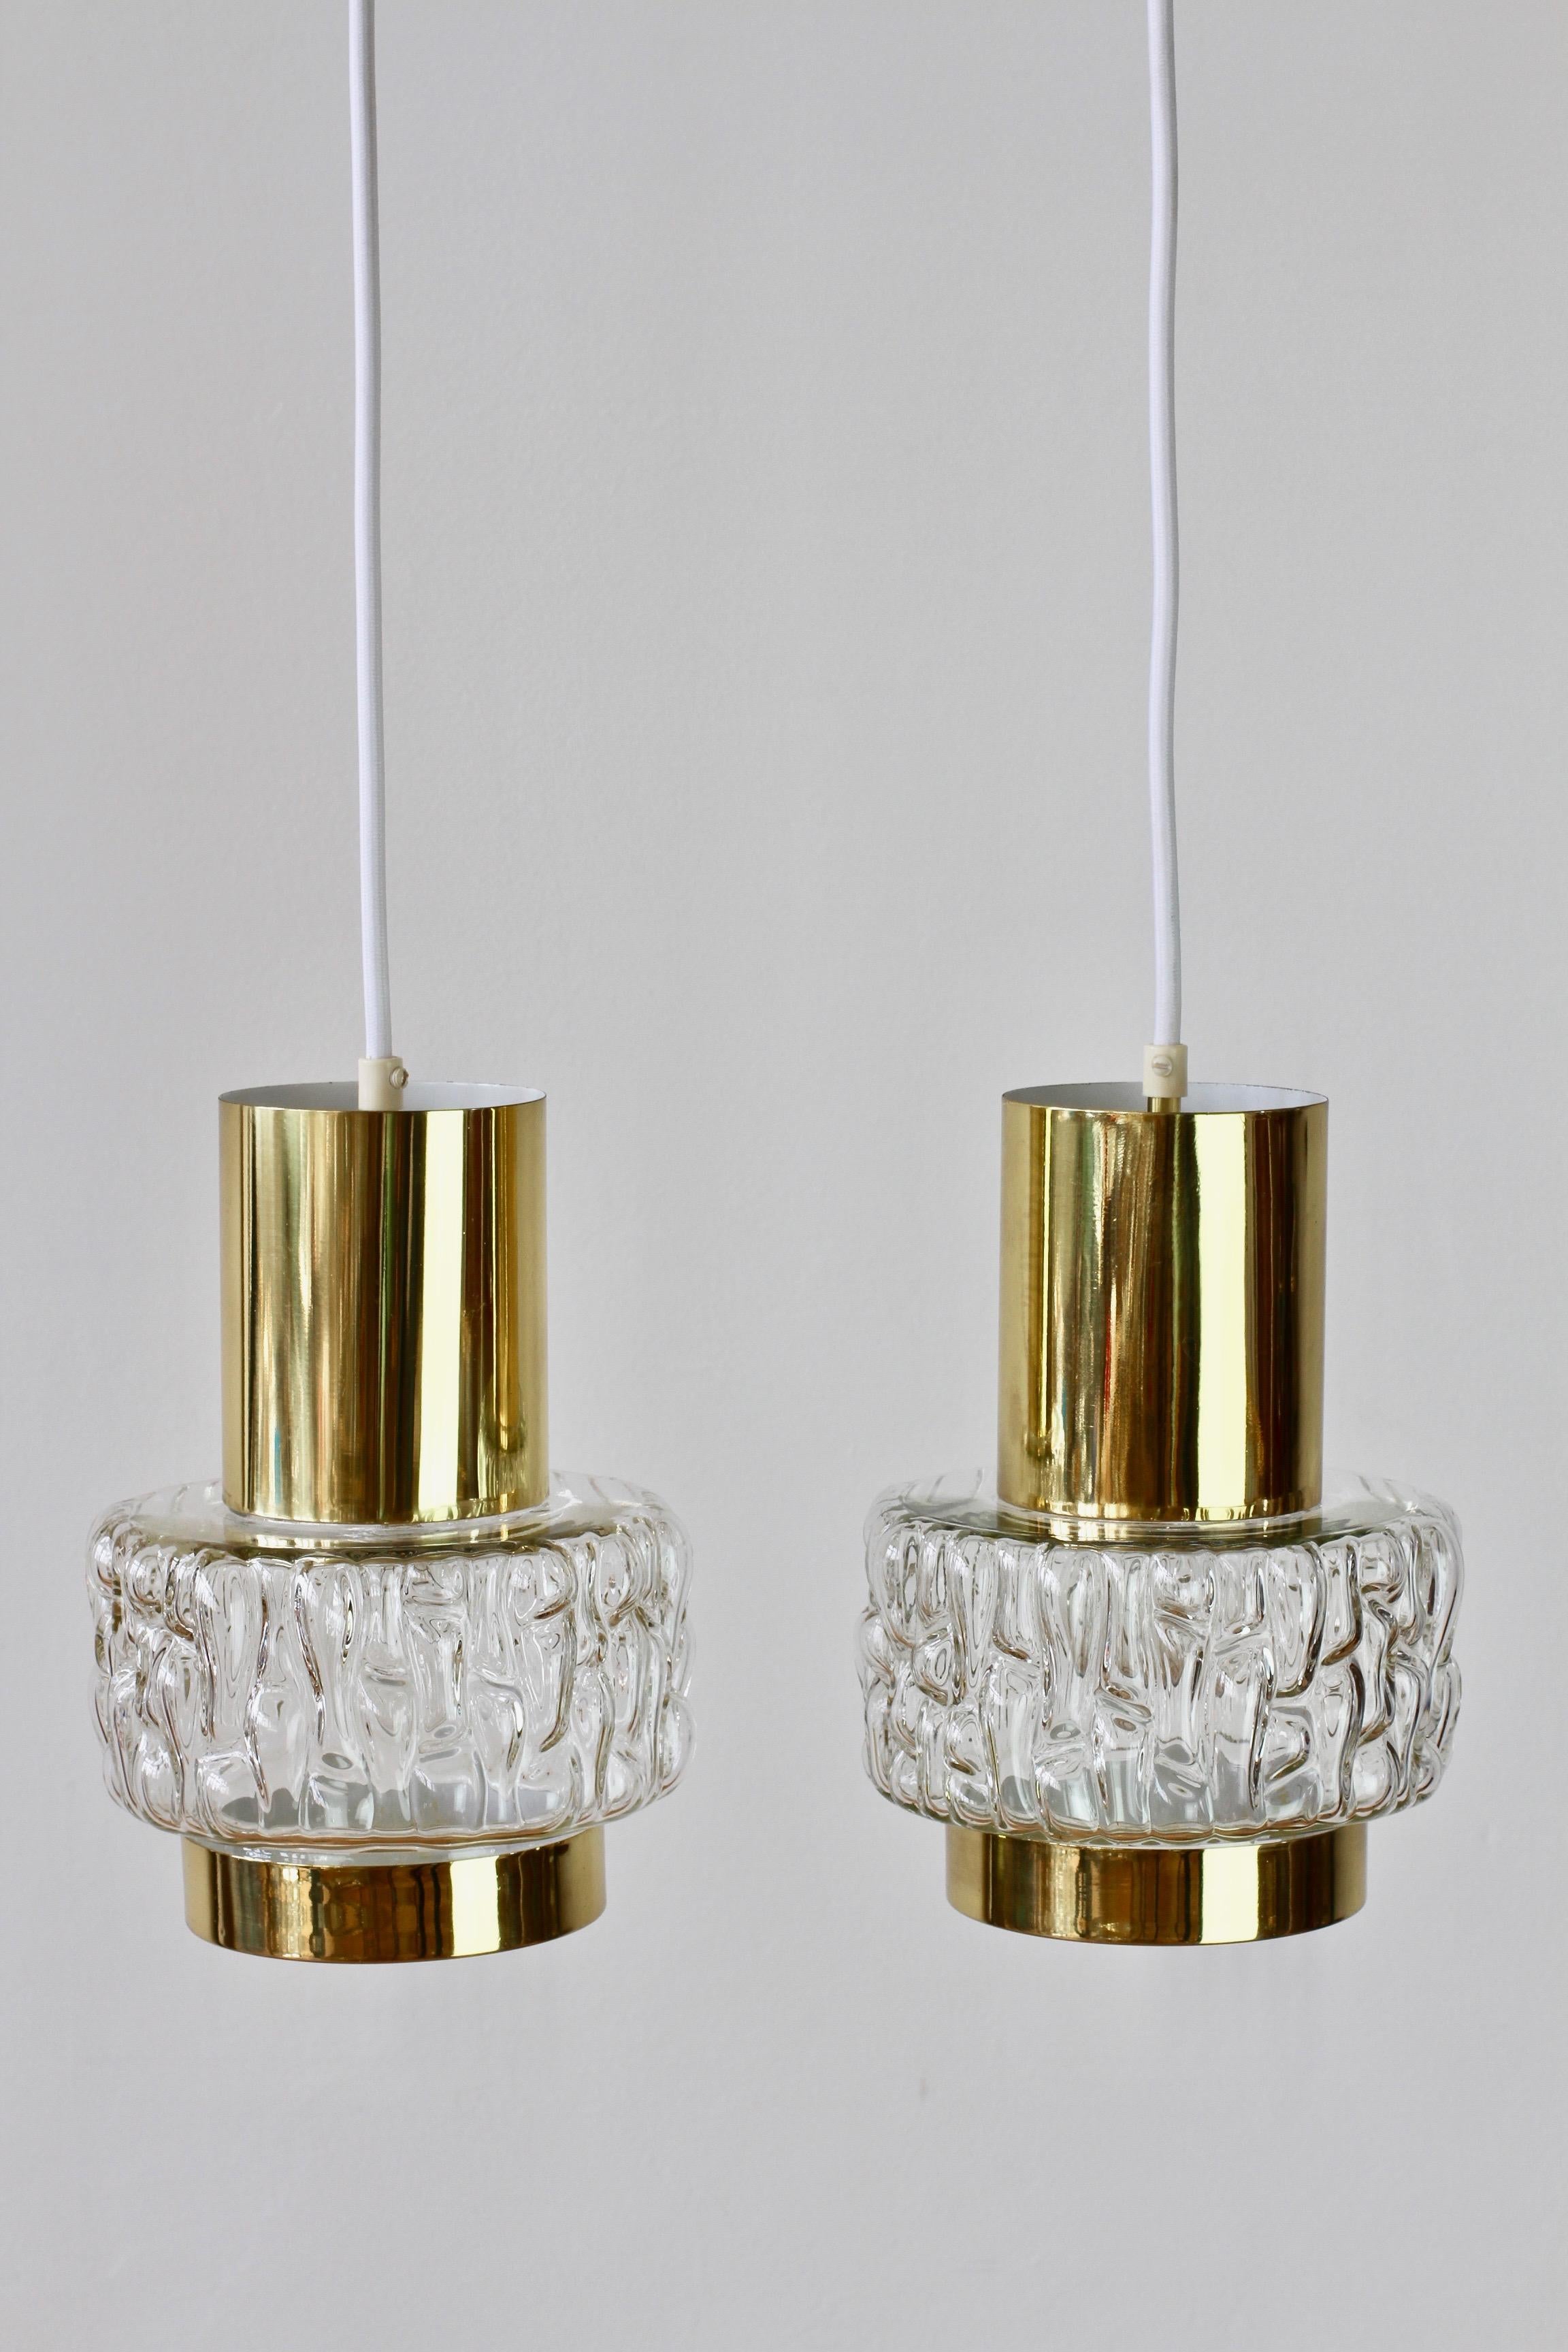 Metal Rupert Nikoll Rare Pair of Austrian Brass & Textured Glass Pendant Lights Lamps For Sale